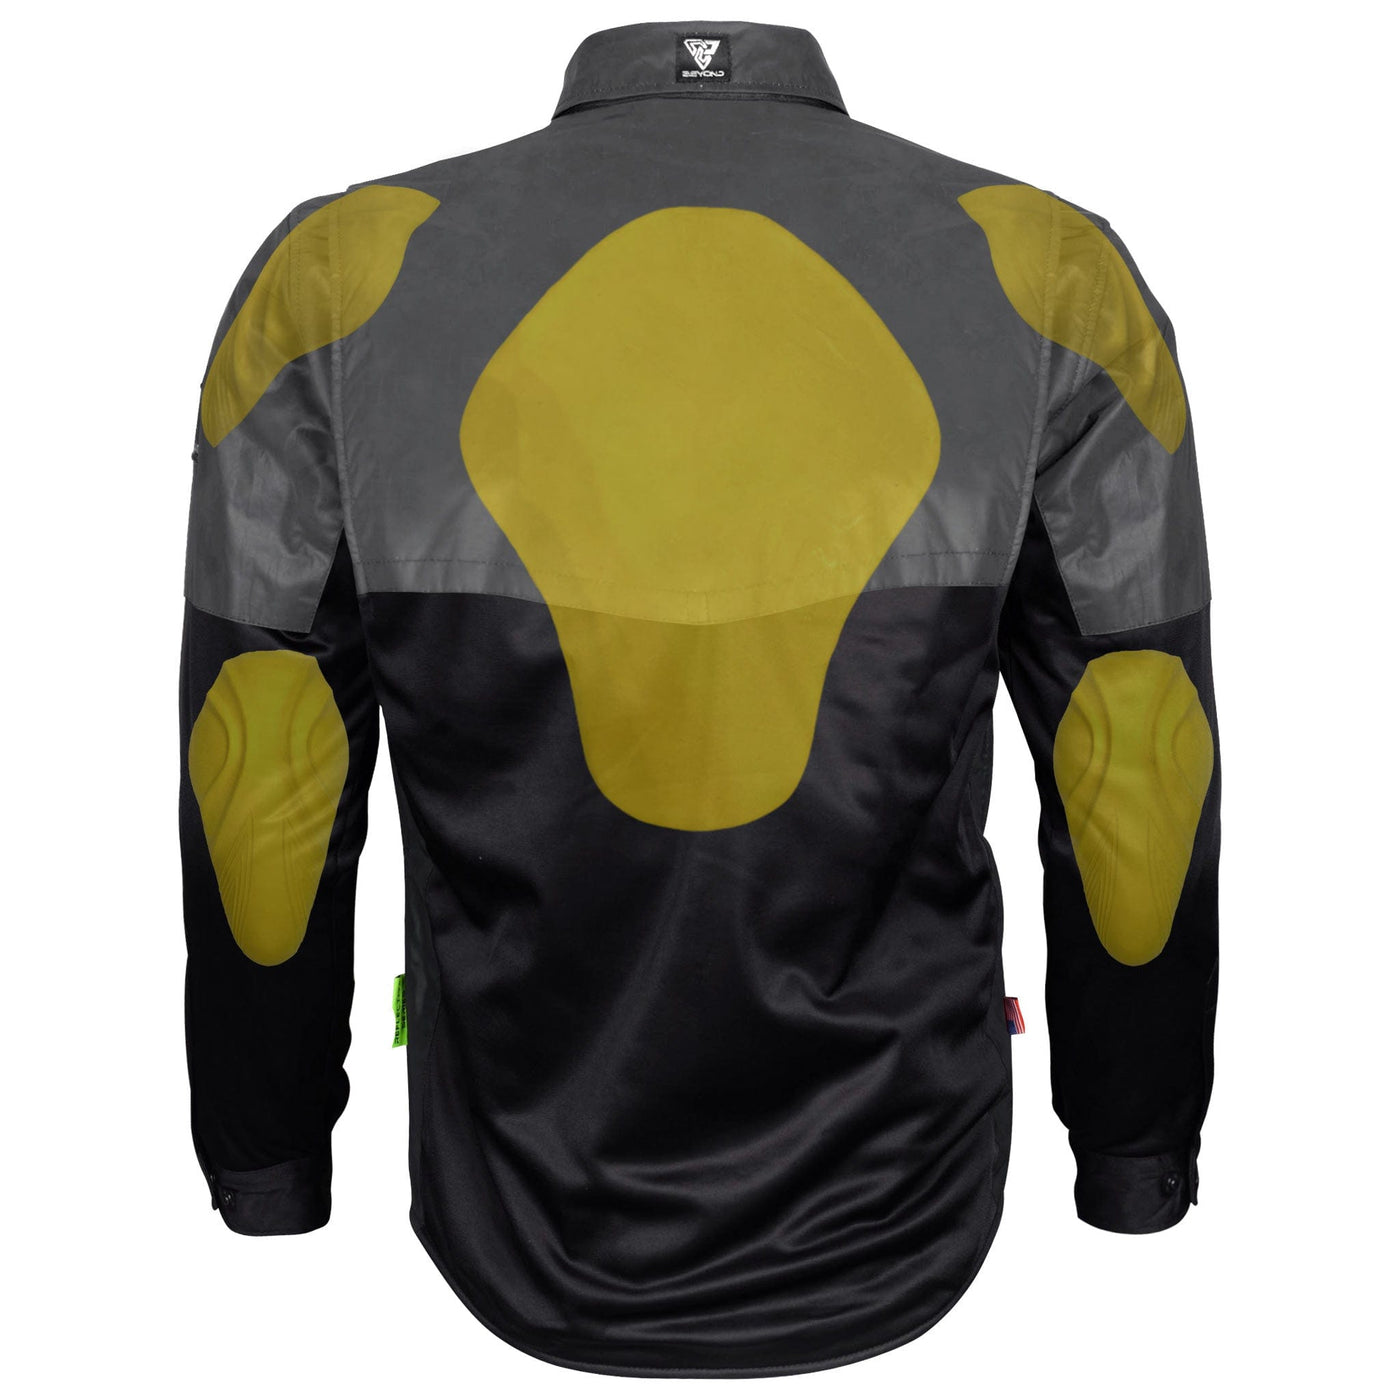 Ultra Reflective Shirt "Nightfall Nebula"  with Pads - Black